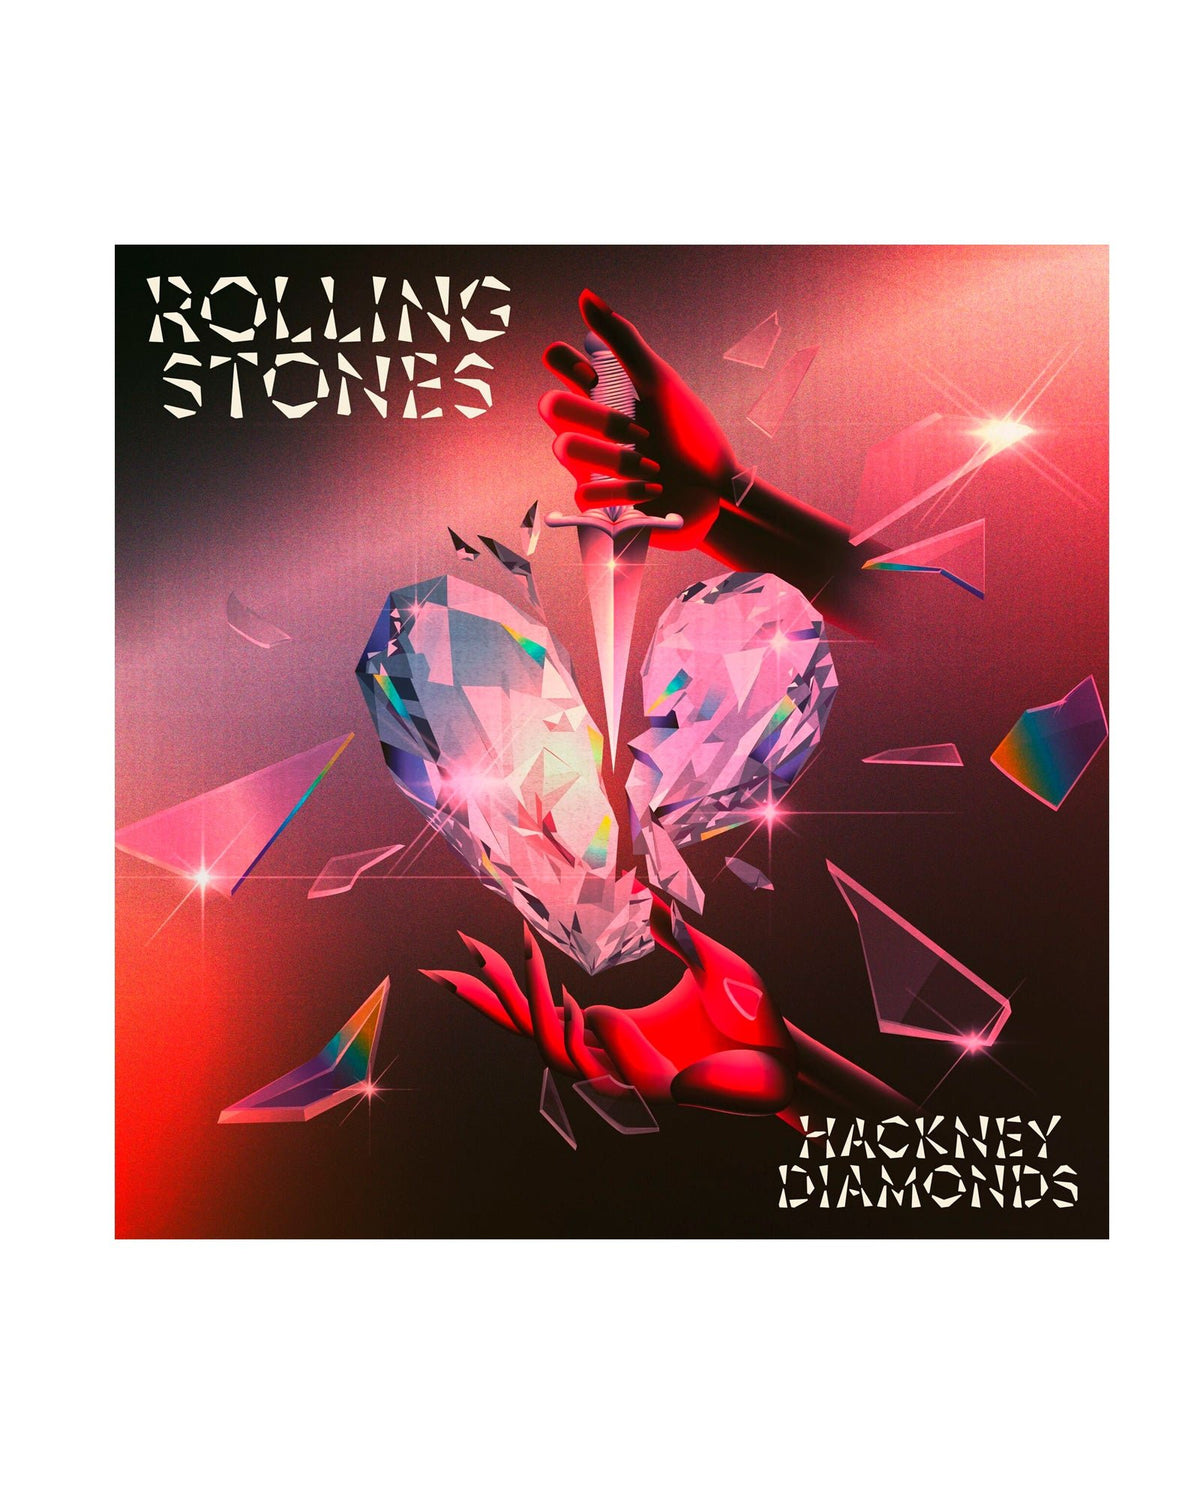 The Rolling Stones - LP Vinilo Edición Exclusiva Color Transparente "Hackney Diamonds" - D2fy · Rocktud - Rocktud